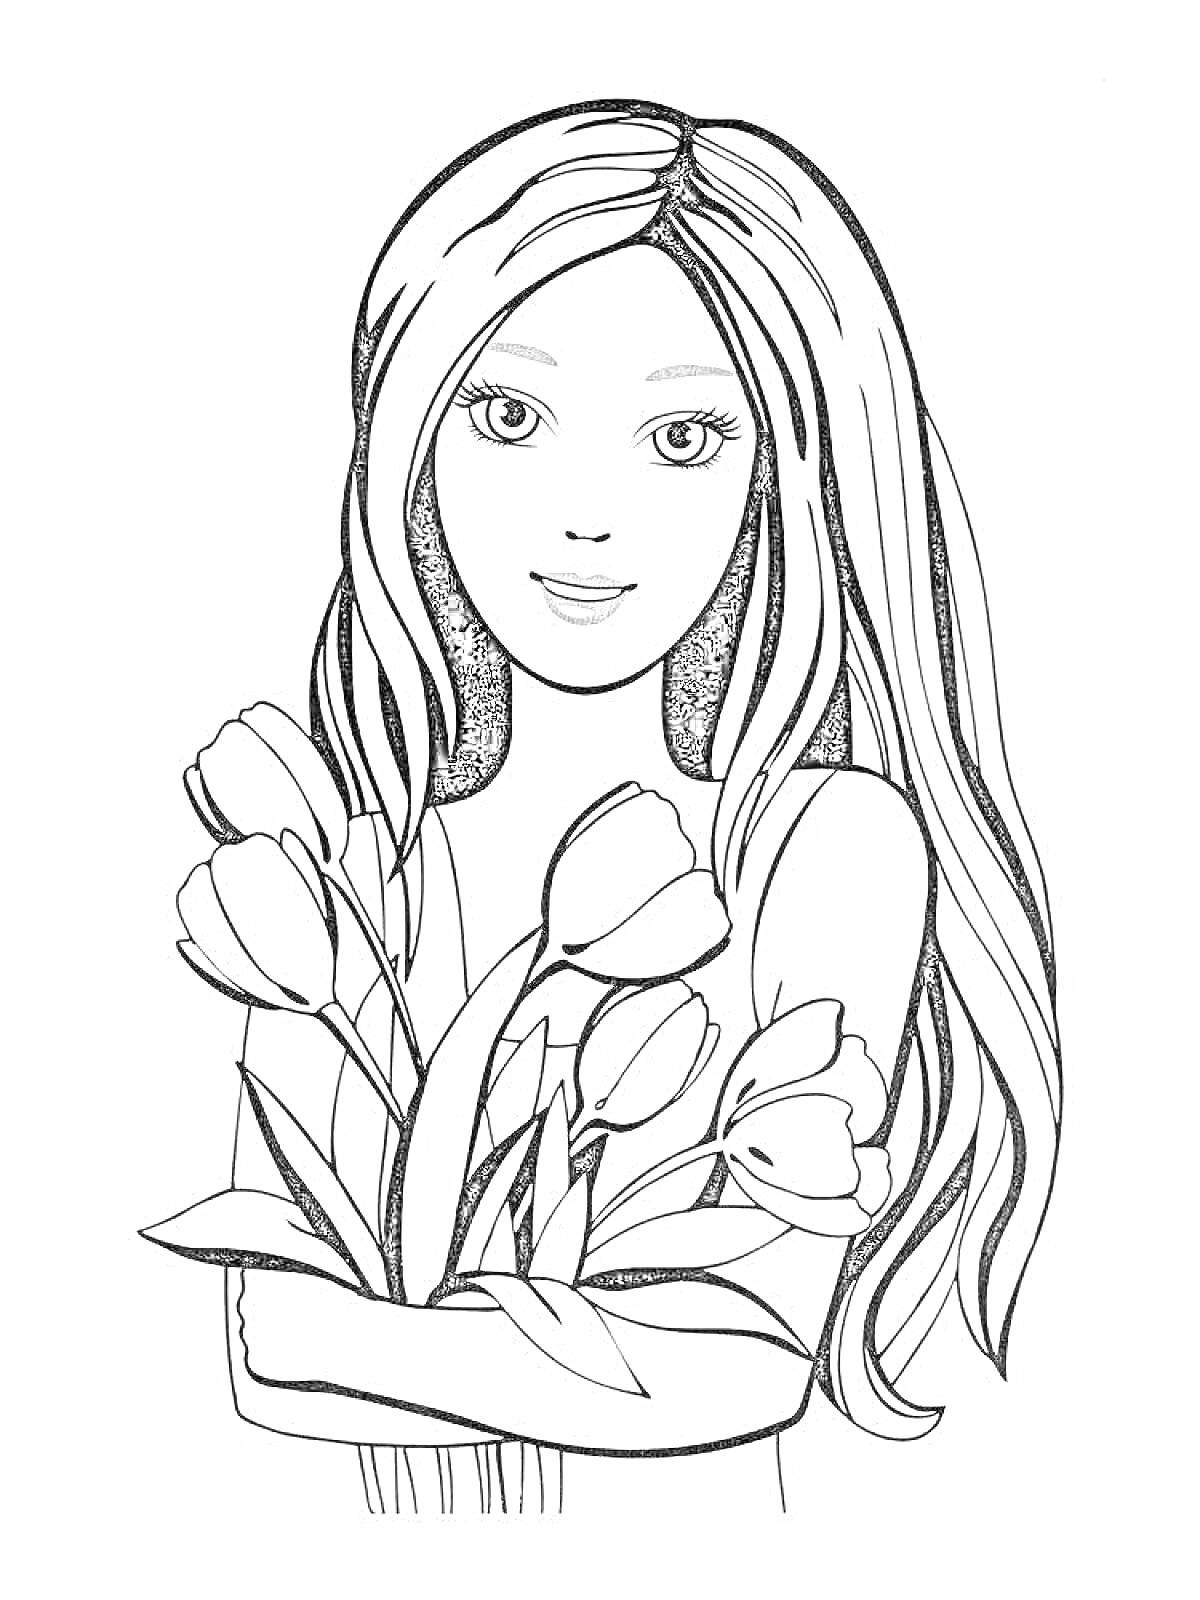 Раскраска девушка с распущенными волосами и тюльпанами в руках